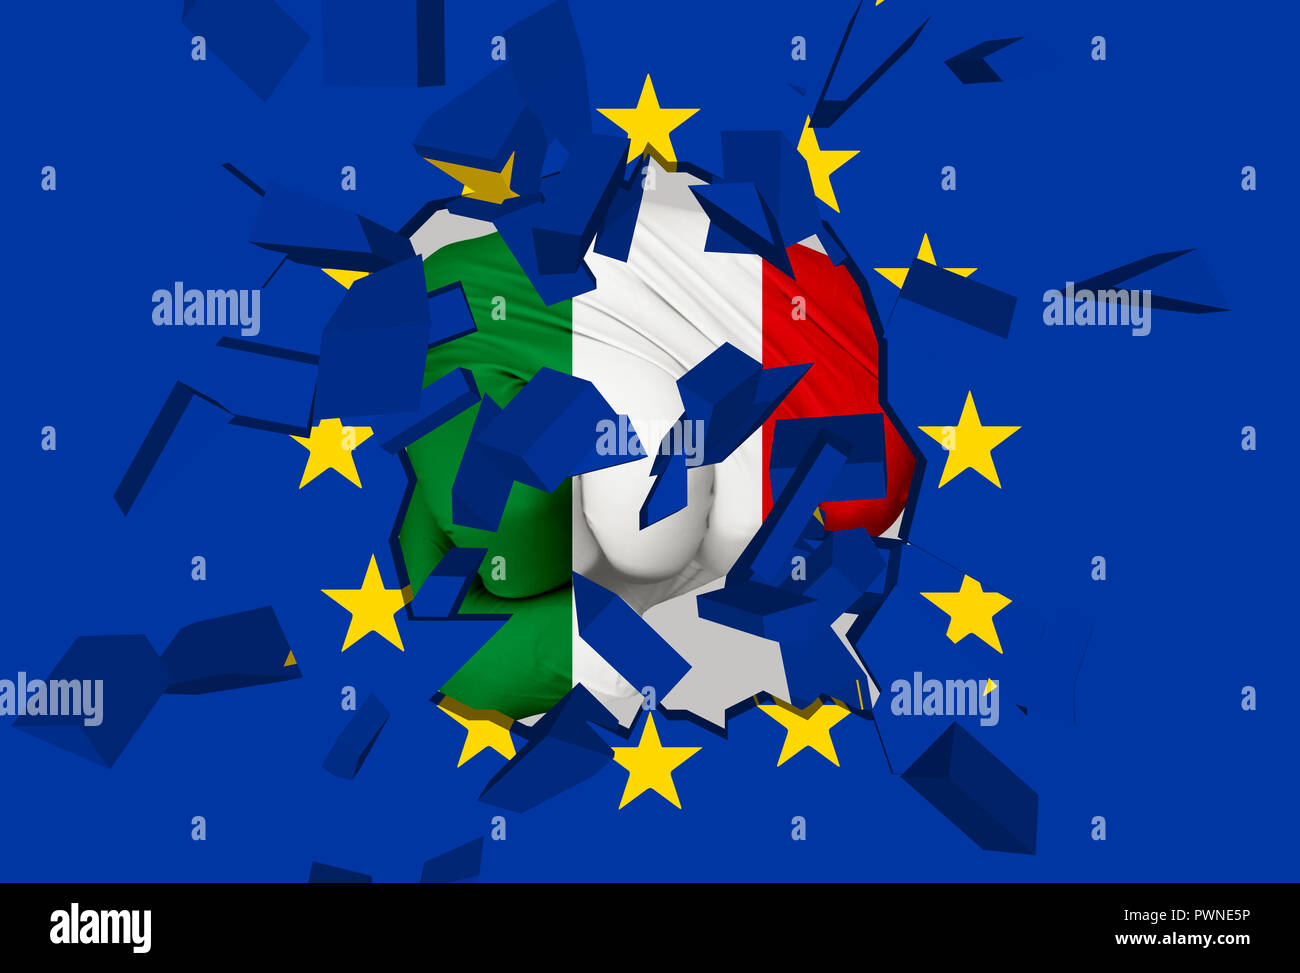 3D-Illustration: Eine Faust-förmige italienische Flagge Hits und zerstört die EU-Flagge. Es ist eine allegorische Bild der Krise zwischen der EU und Italien, gefolgt von t Stockfoto